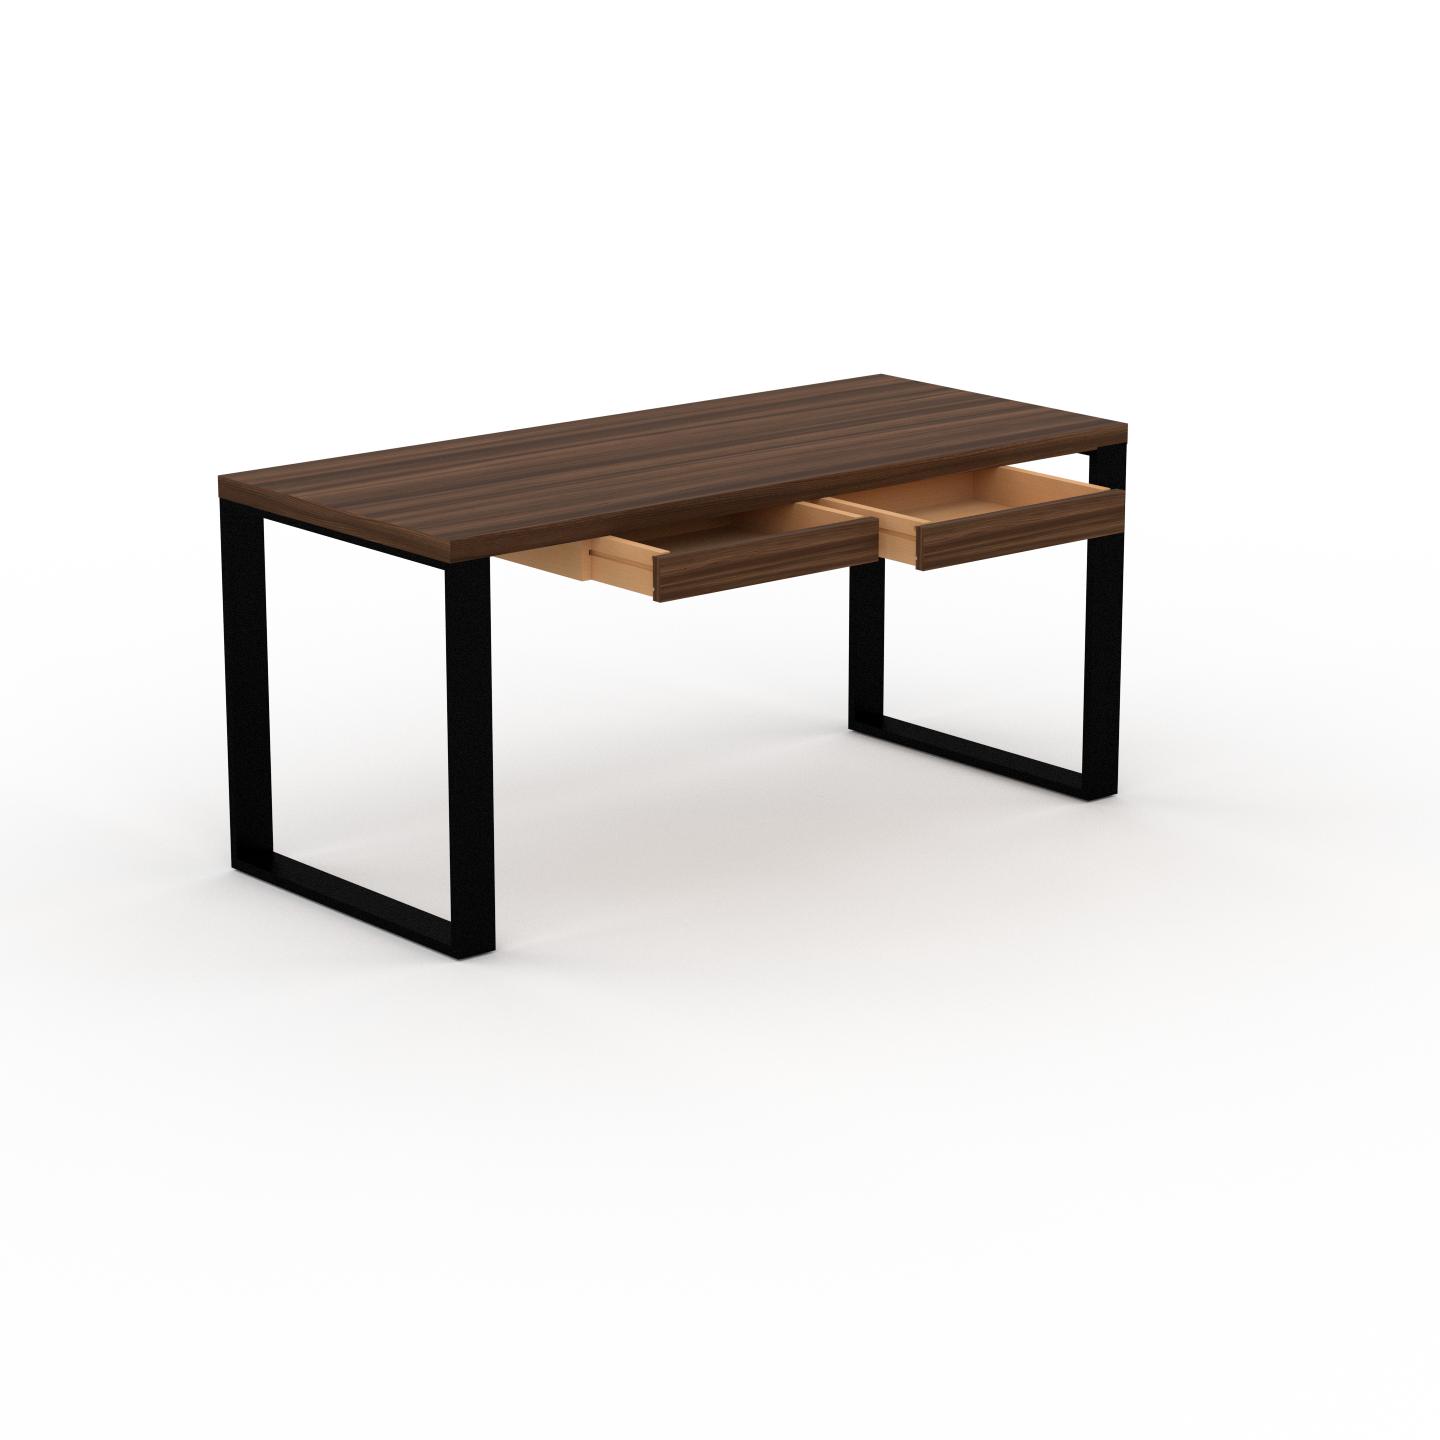 MYCS Schreibtisch Massivholz Nussbaum - Moderner Massivholz-Schreibtisch: mit 2 Schublade/n - Hochwertige Materialien - 160 x 75 x 70 cm, konfigurierbar